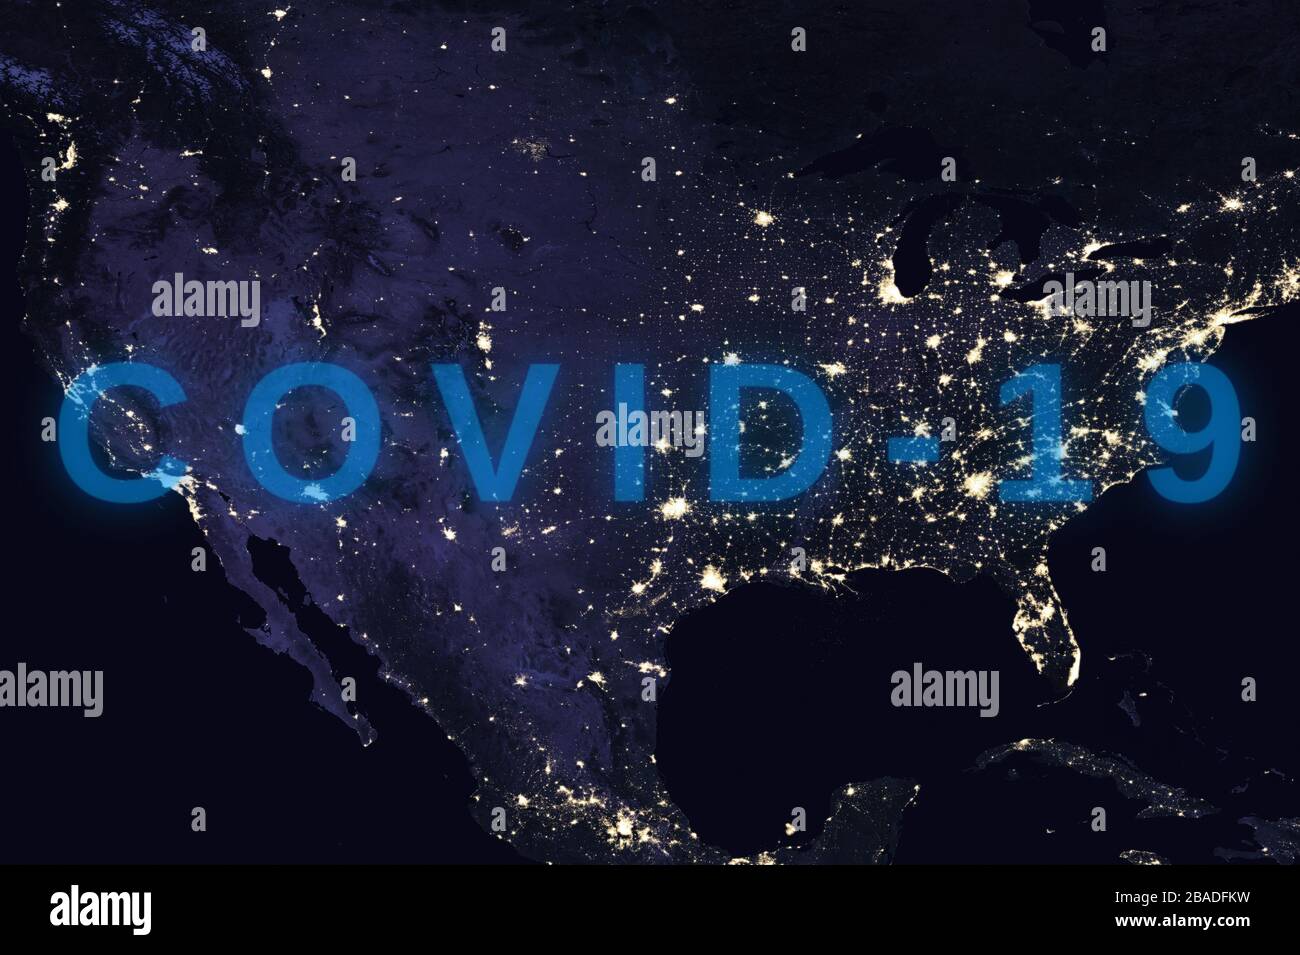 Coronavirus-Krankheit - glühendes COVID-19-Zeichen auf der Karte der USA - Elemente dieses Bildes, das von der NASA eingerichtet wurde Stockfoto